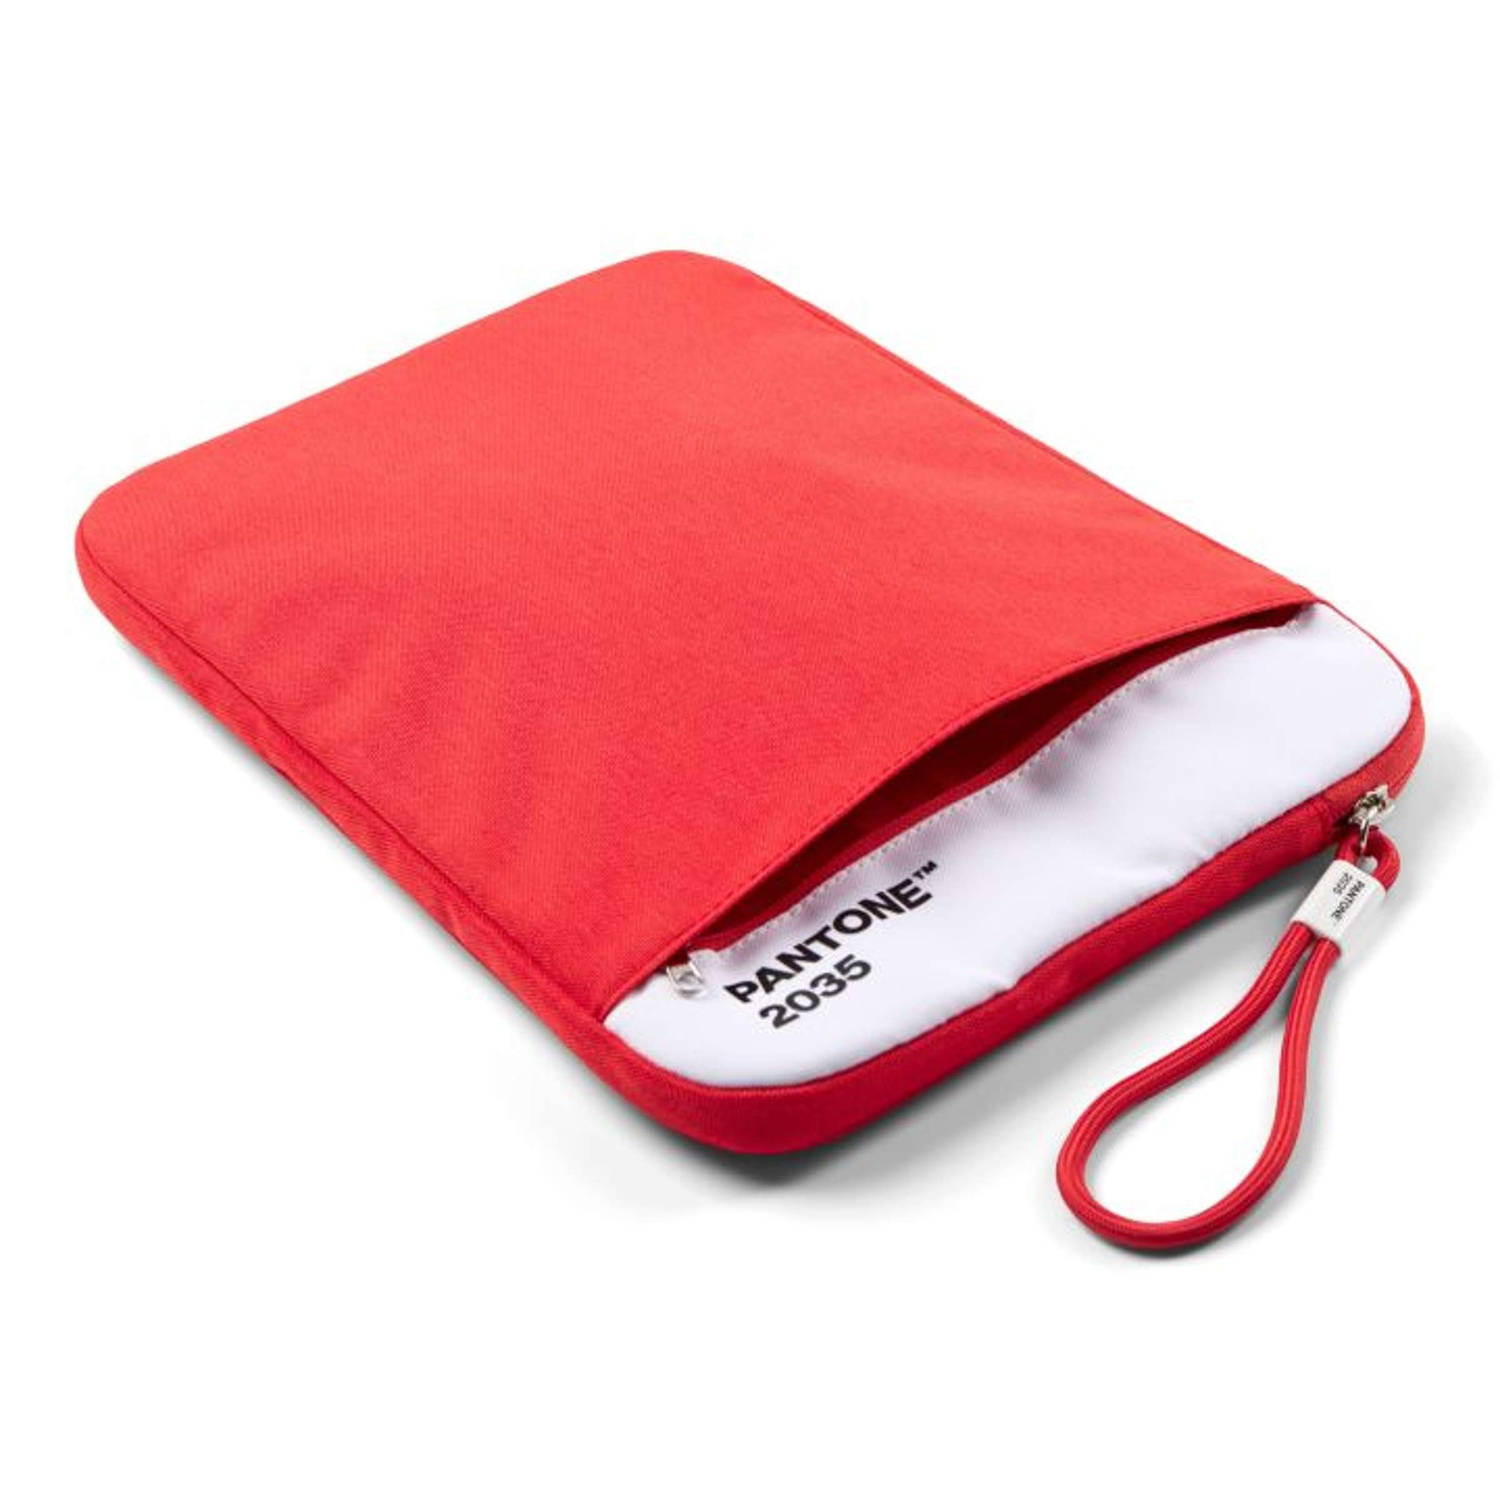 Copenhagen Design Beschermhoes voor Tablet 13 inch Red 2035 Polyester Rood